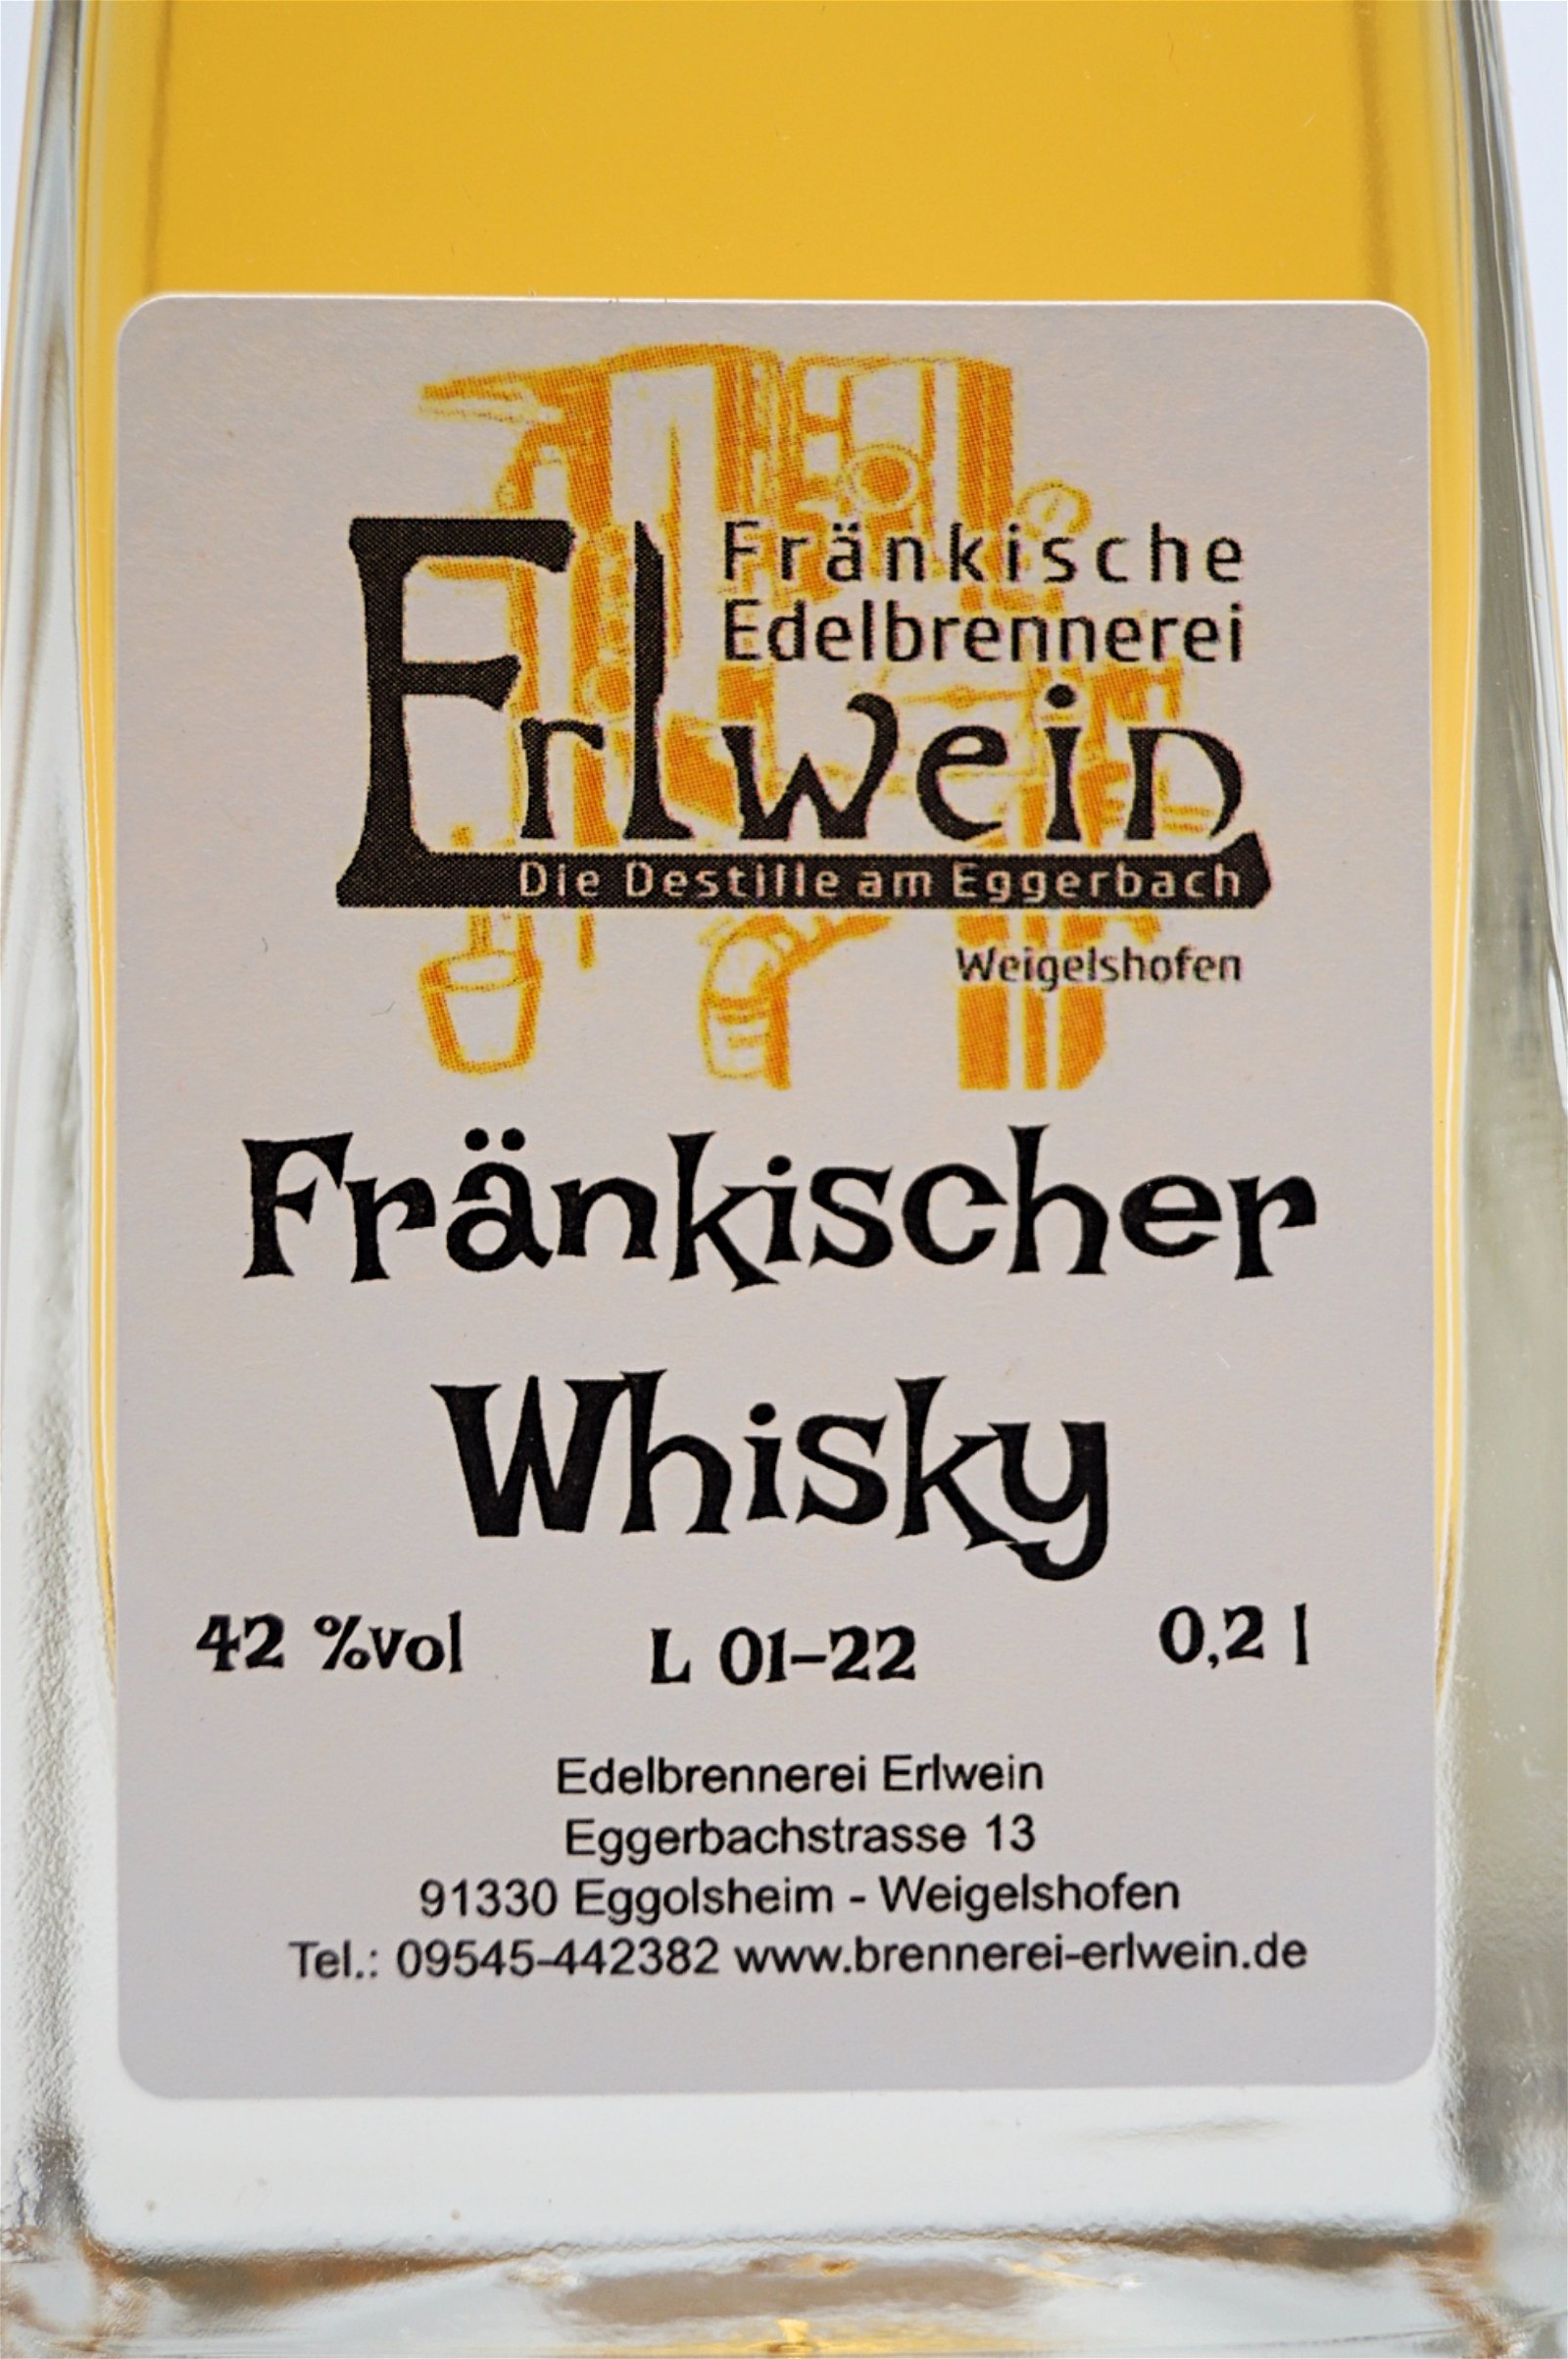 Fränkische Edelbrennerei Erlwein  Fränkischer Whisky